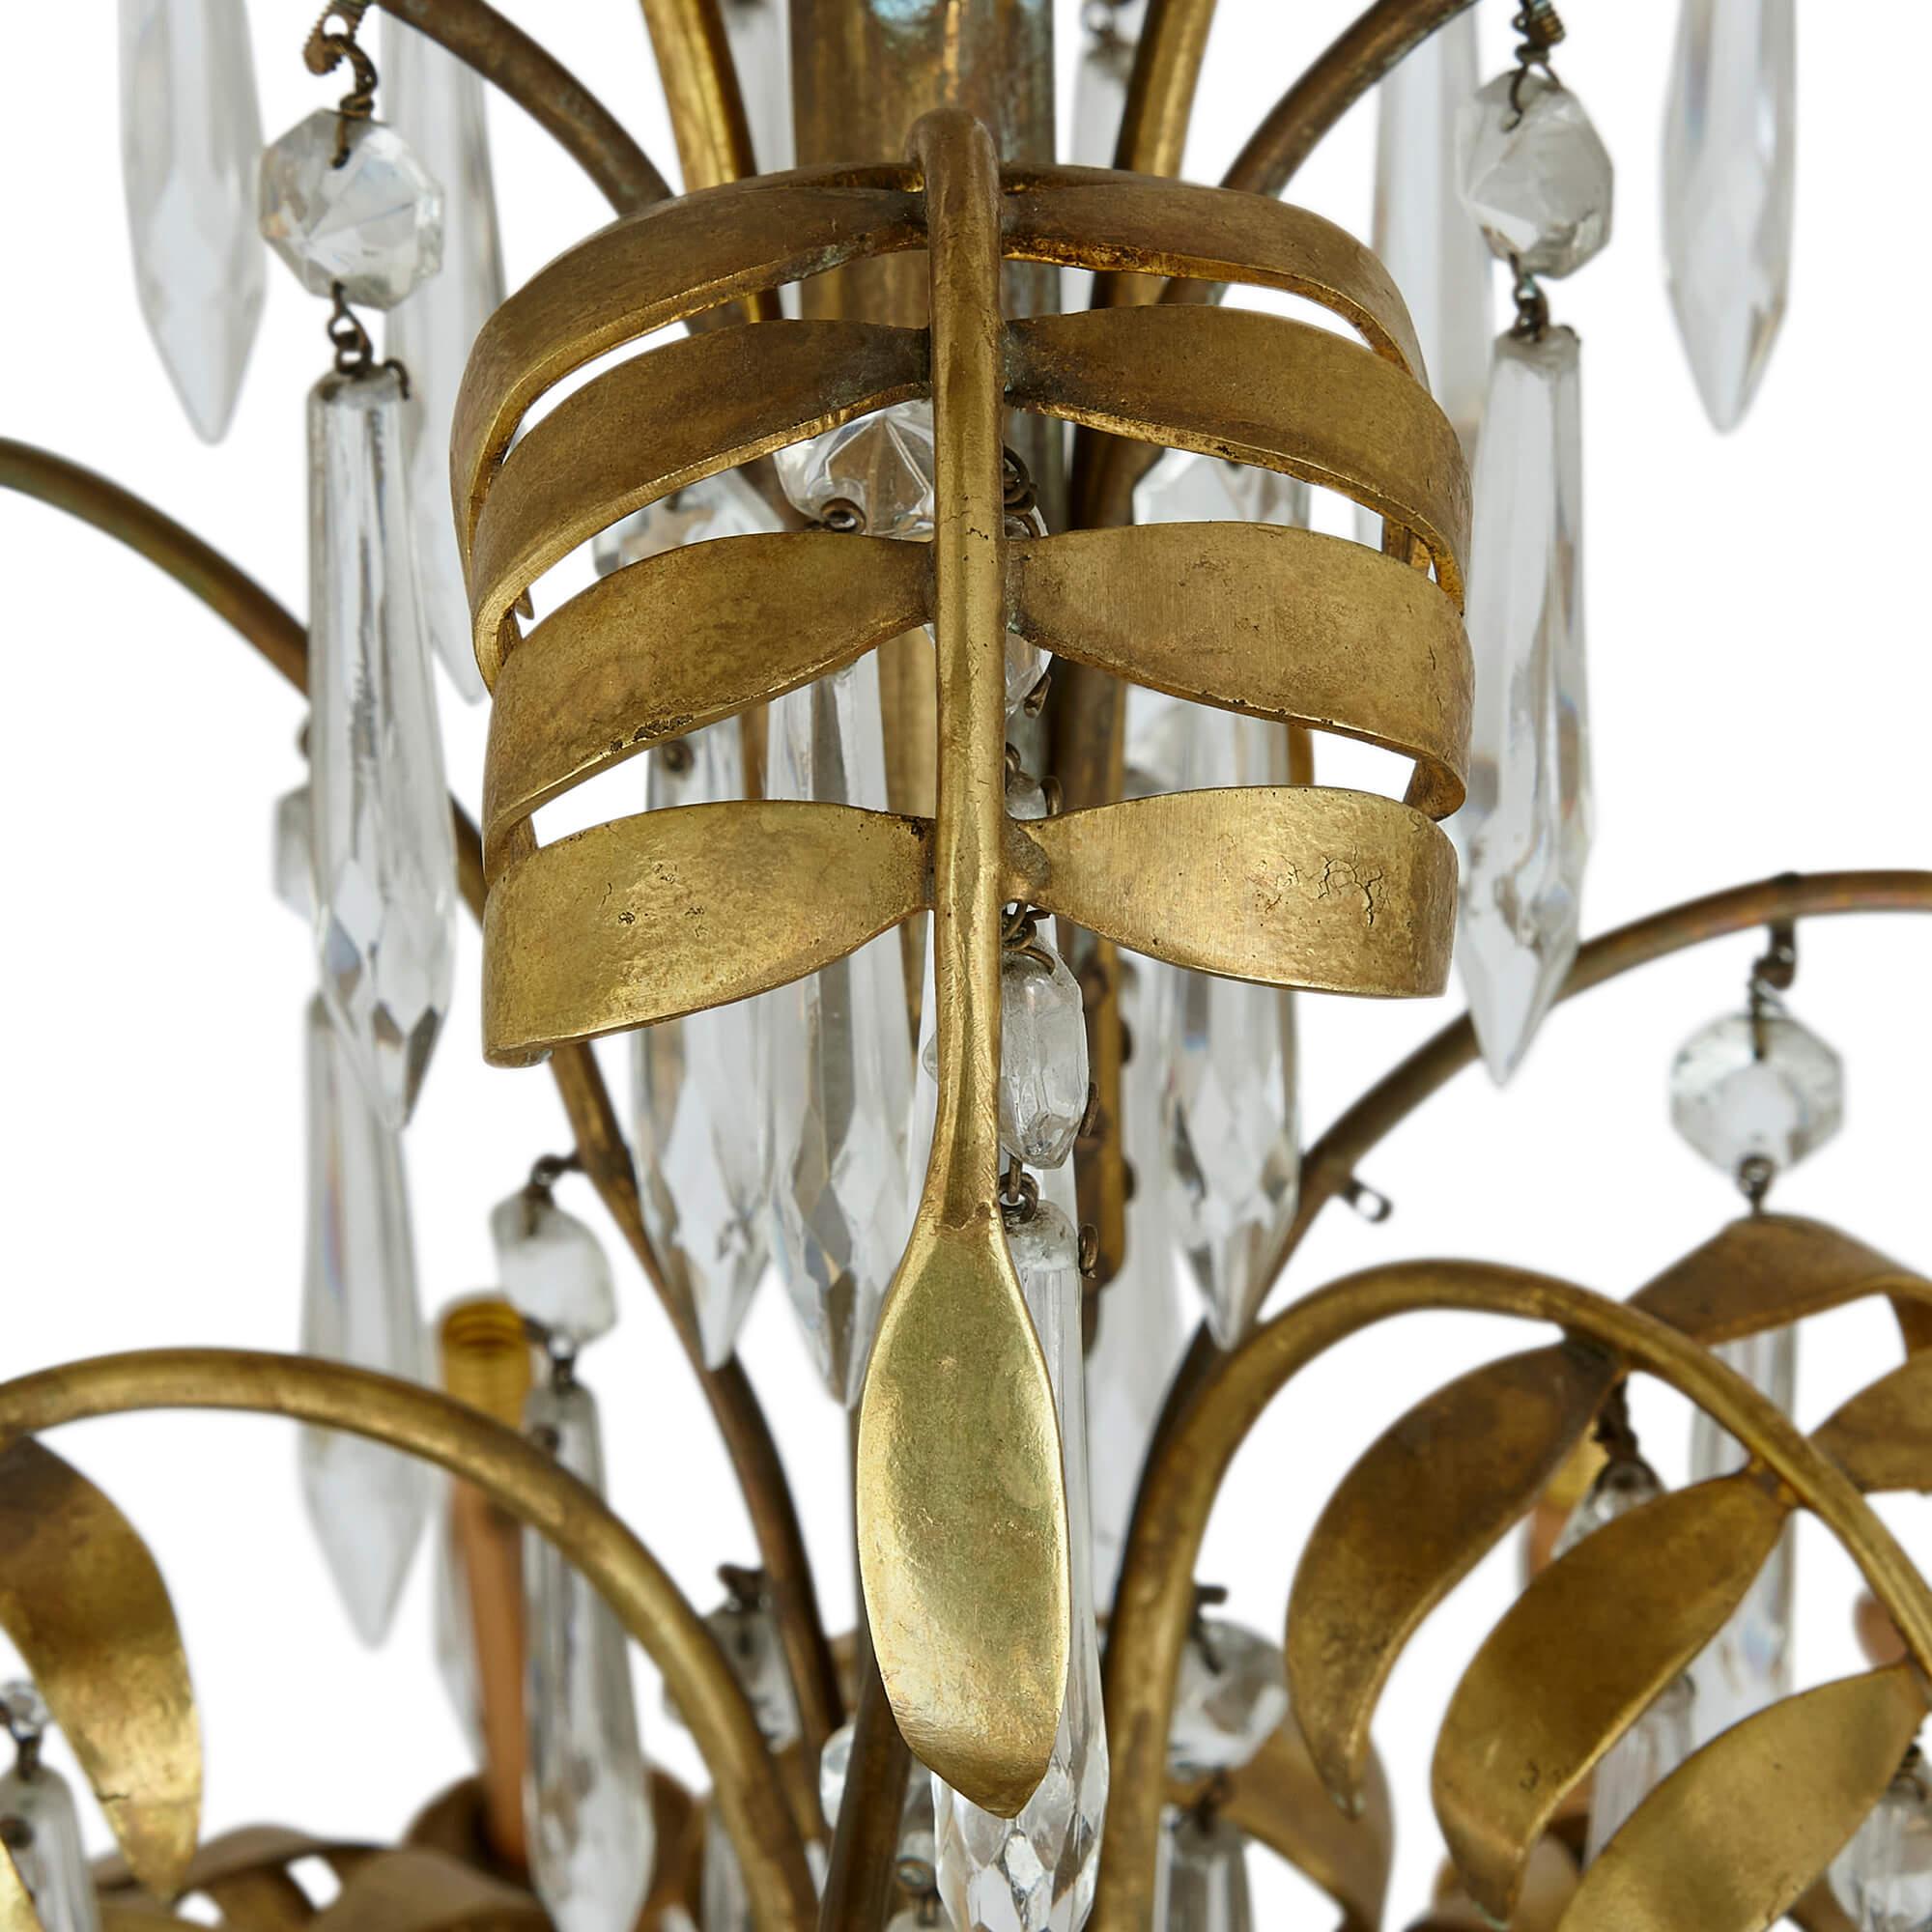 Antiker französischer Kronleuchter mit zwölf Lichtern aus geschliffenem Klarglas und Ormolu
Französisch, um 1880 
Höhe 115cm, Durchmesser 75cm

Dieser auffällige Kronleuchter wurde im späten 19. Jahrhundert in Frankreich hergestellt. Seine prächtige